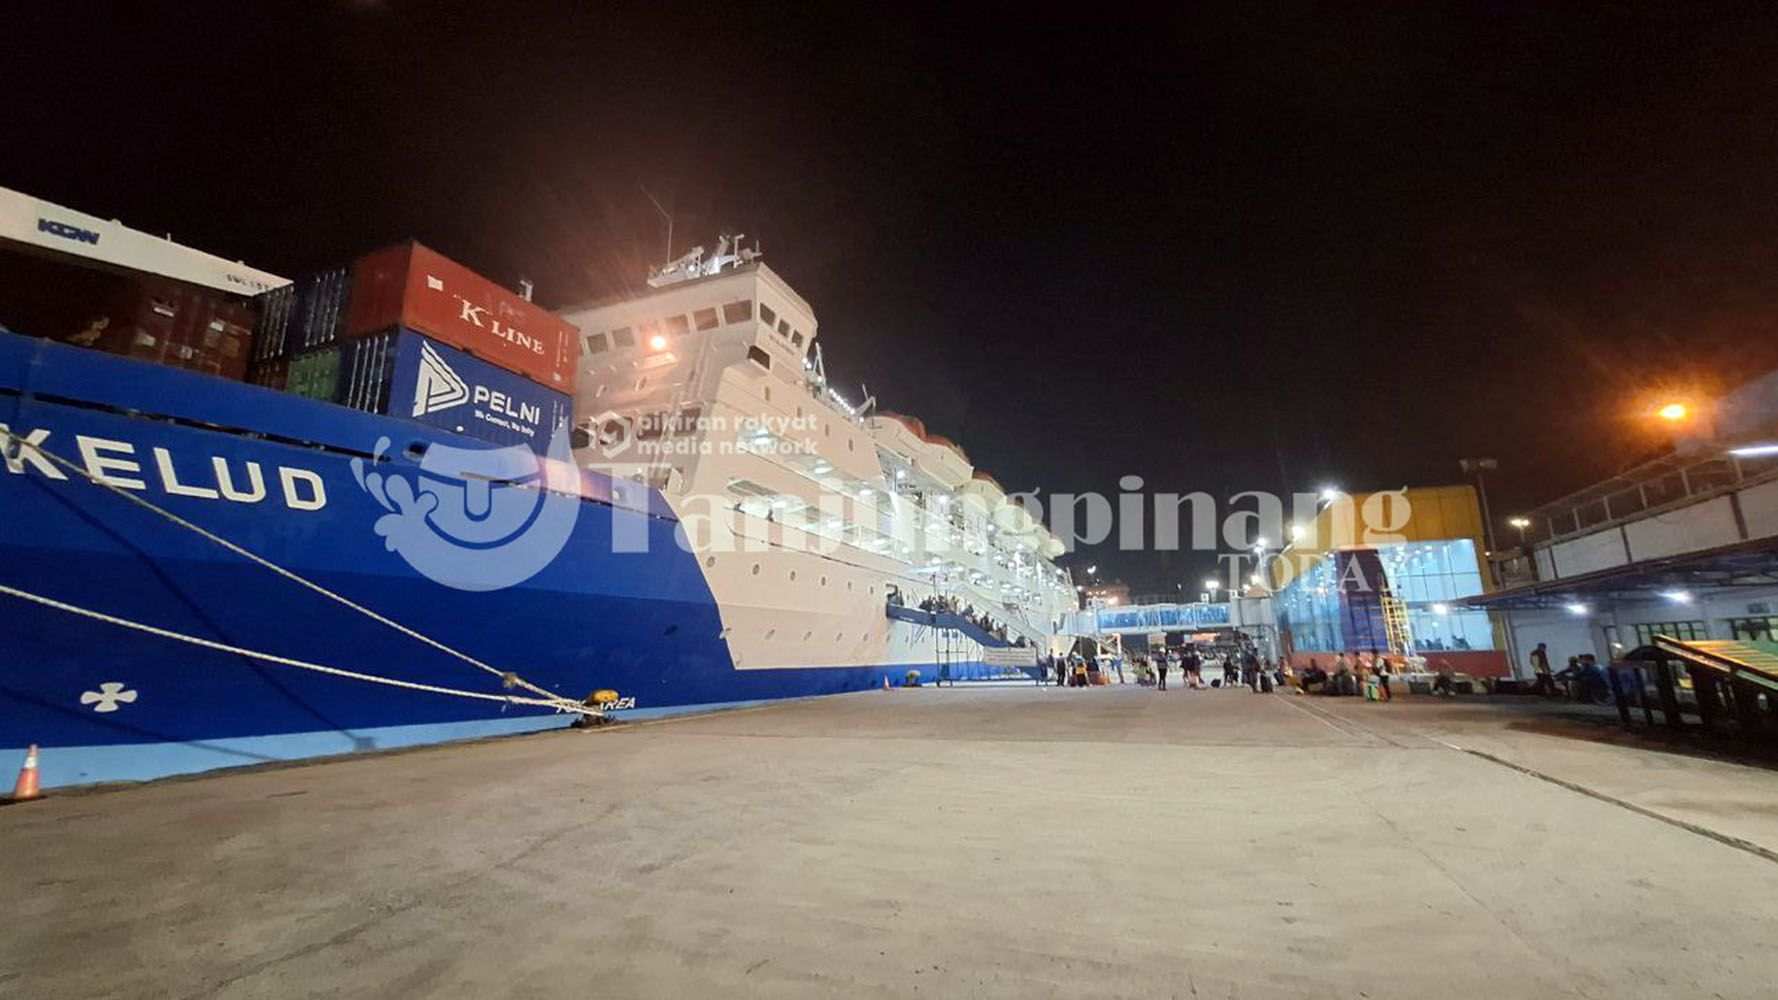 Kapal PELNI KM Kelud. Diakhir Juni, 2 Kapal PELNI Direncanakan Layari Perjalanan Laut Makassar Jakarta, yakni KM Dorolonda dan KM Ciremai